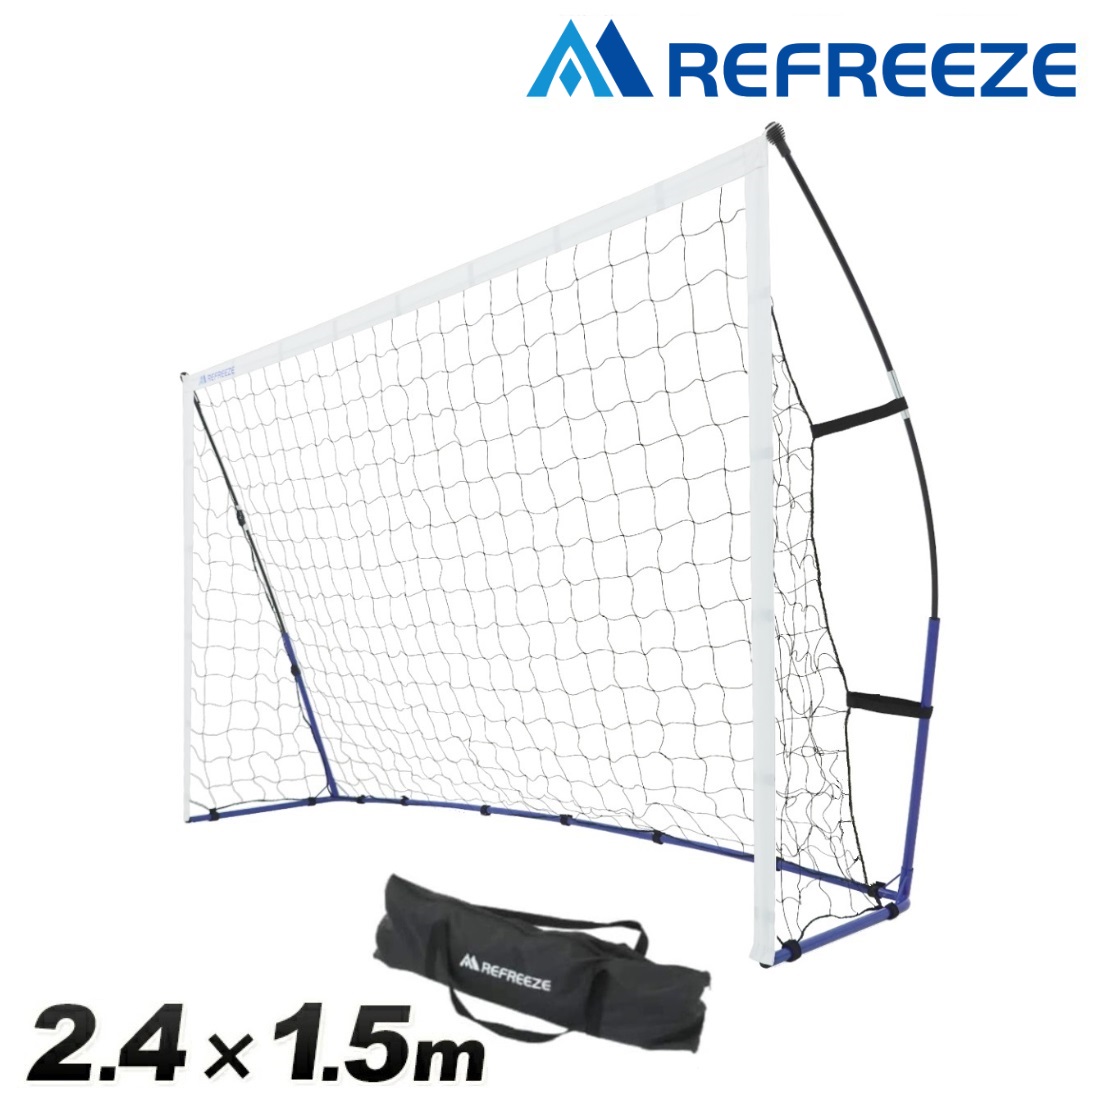 REFREEZE(リフリーズ) ポータブル サッカーゴール 2.4×1.5m 収納バッグ付き サッカー フットサル ゴール ミニゲーム 対戦 練習 トレーニング